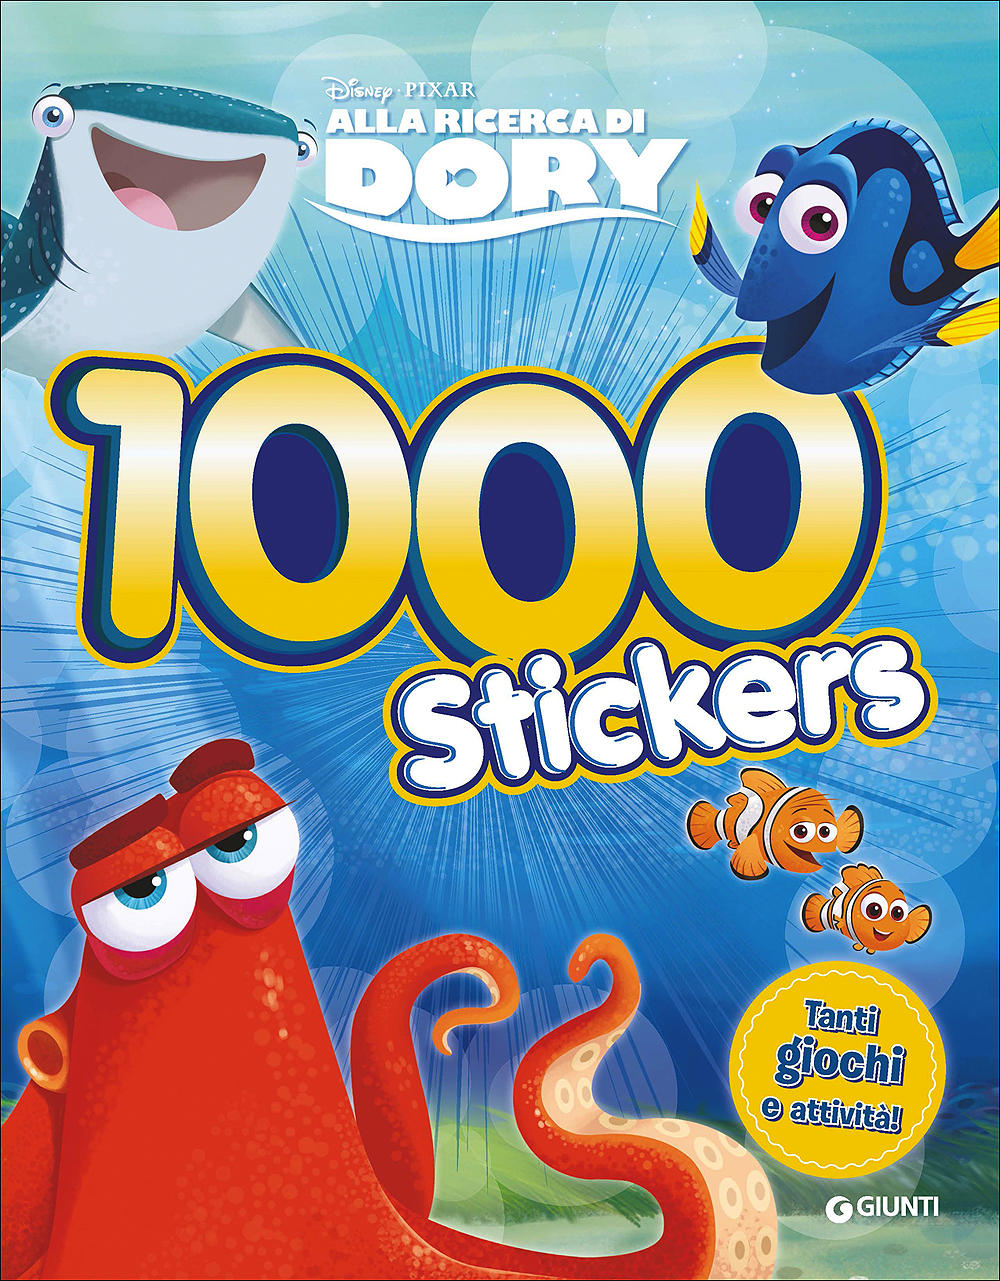 500/1000 Stickers - Alla ricerca di Dory. 1000 Stickers. Tanti giochi e attività!